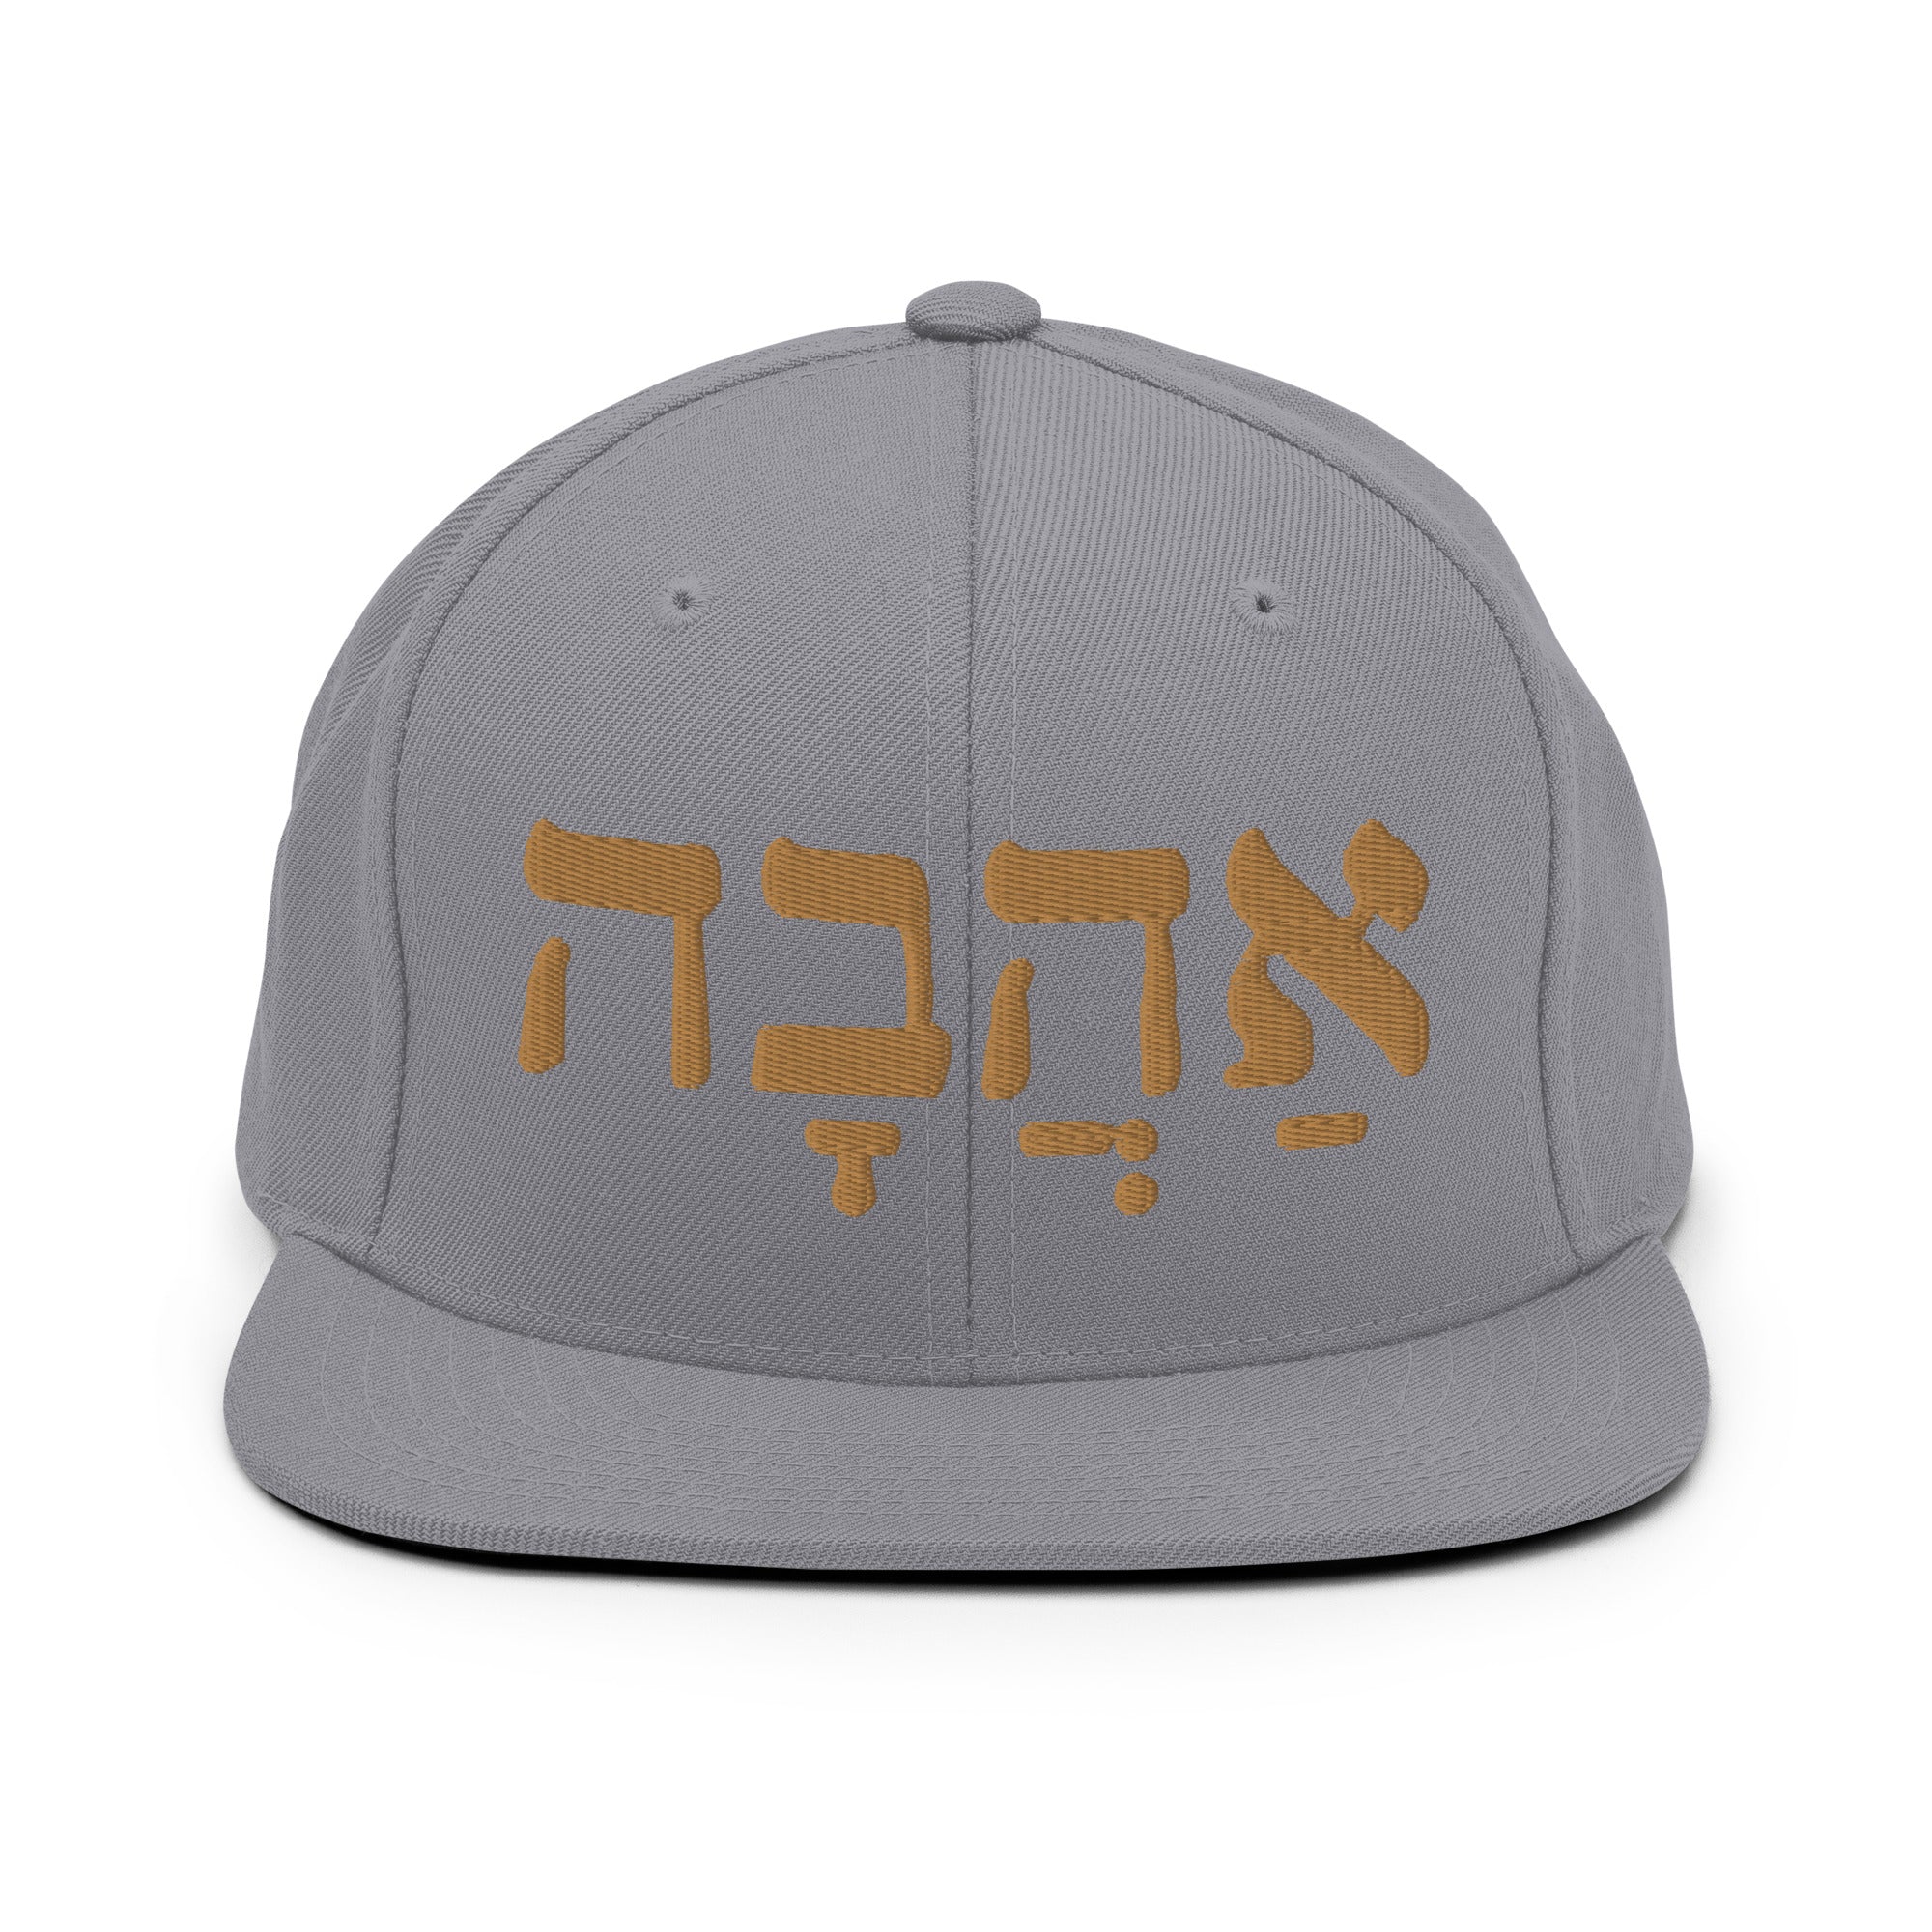 Ahava (Love in hebrew) Snapback Hat